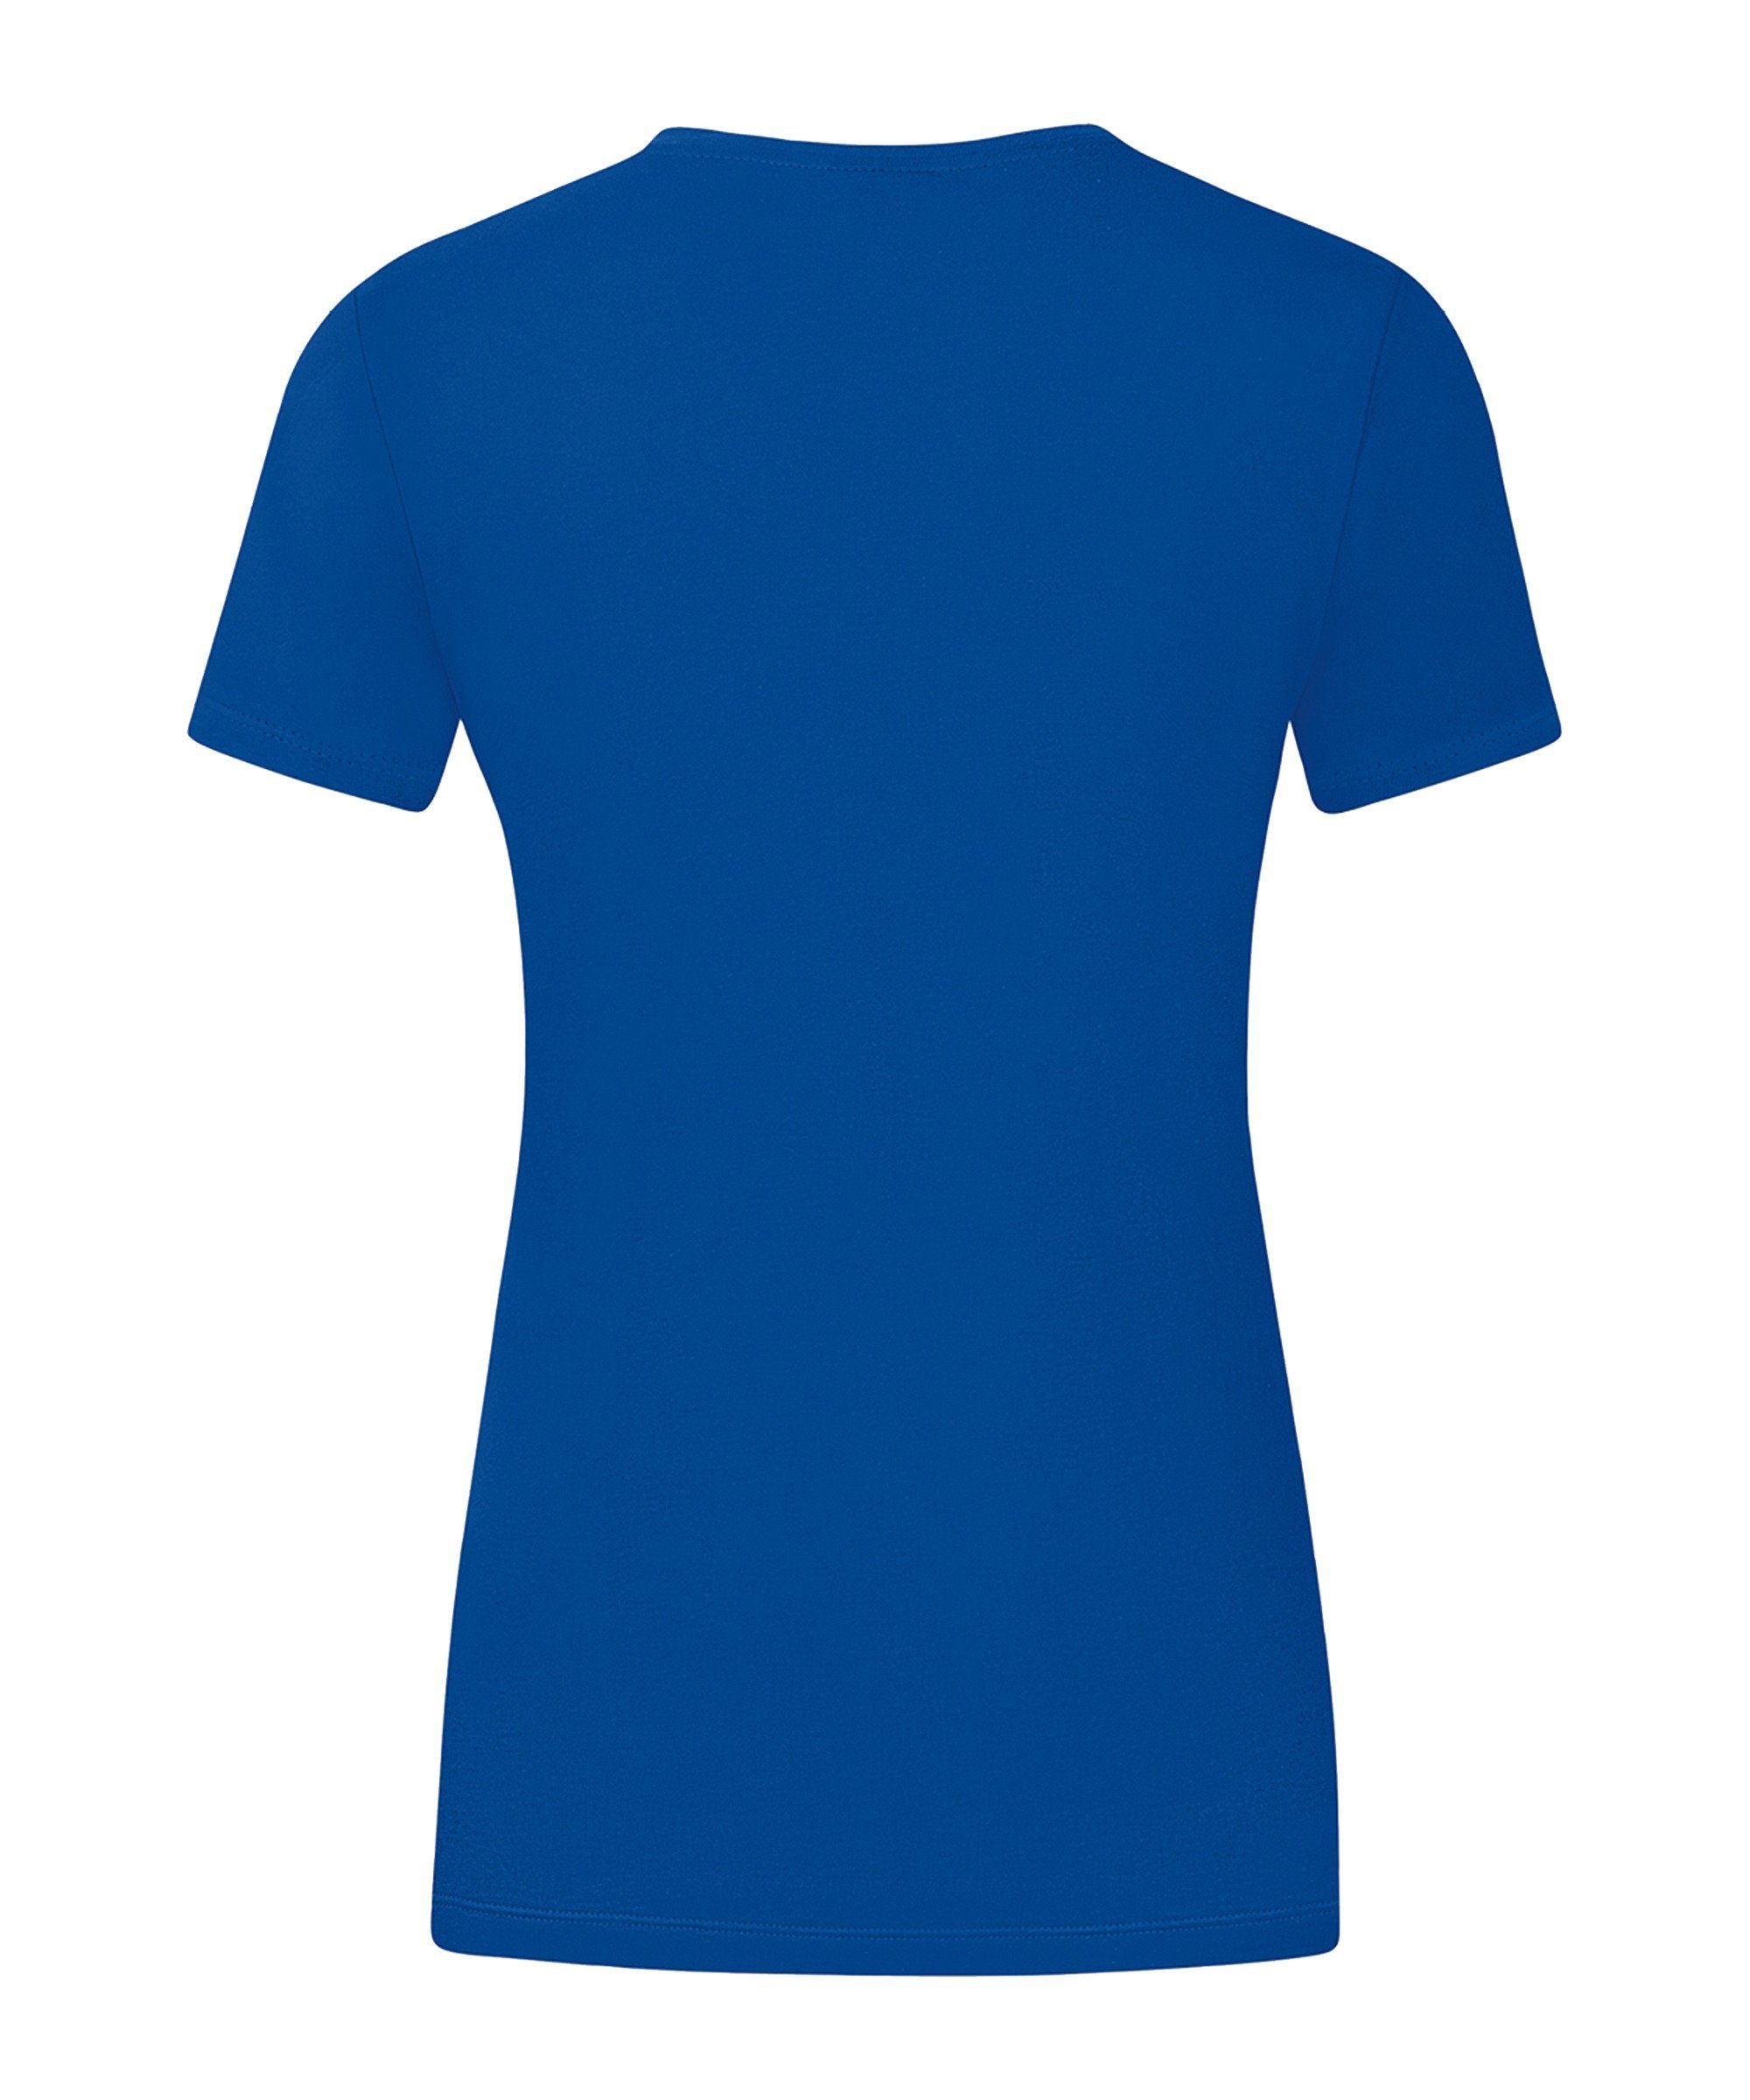 Jako T-Shirt blauweiss Promo Damen default T-Shirt